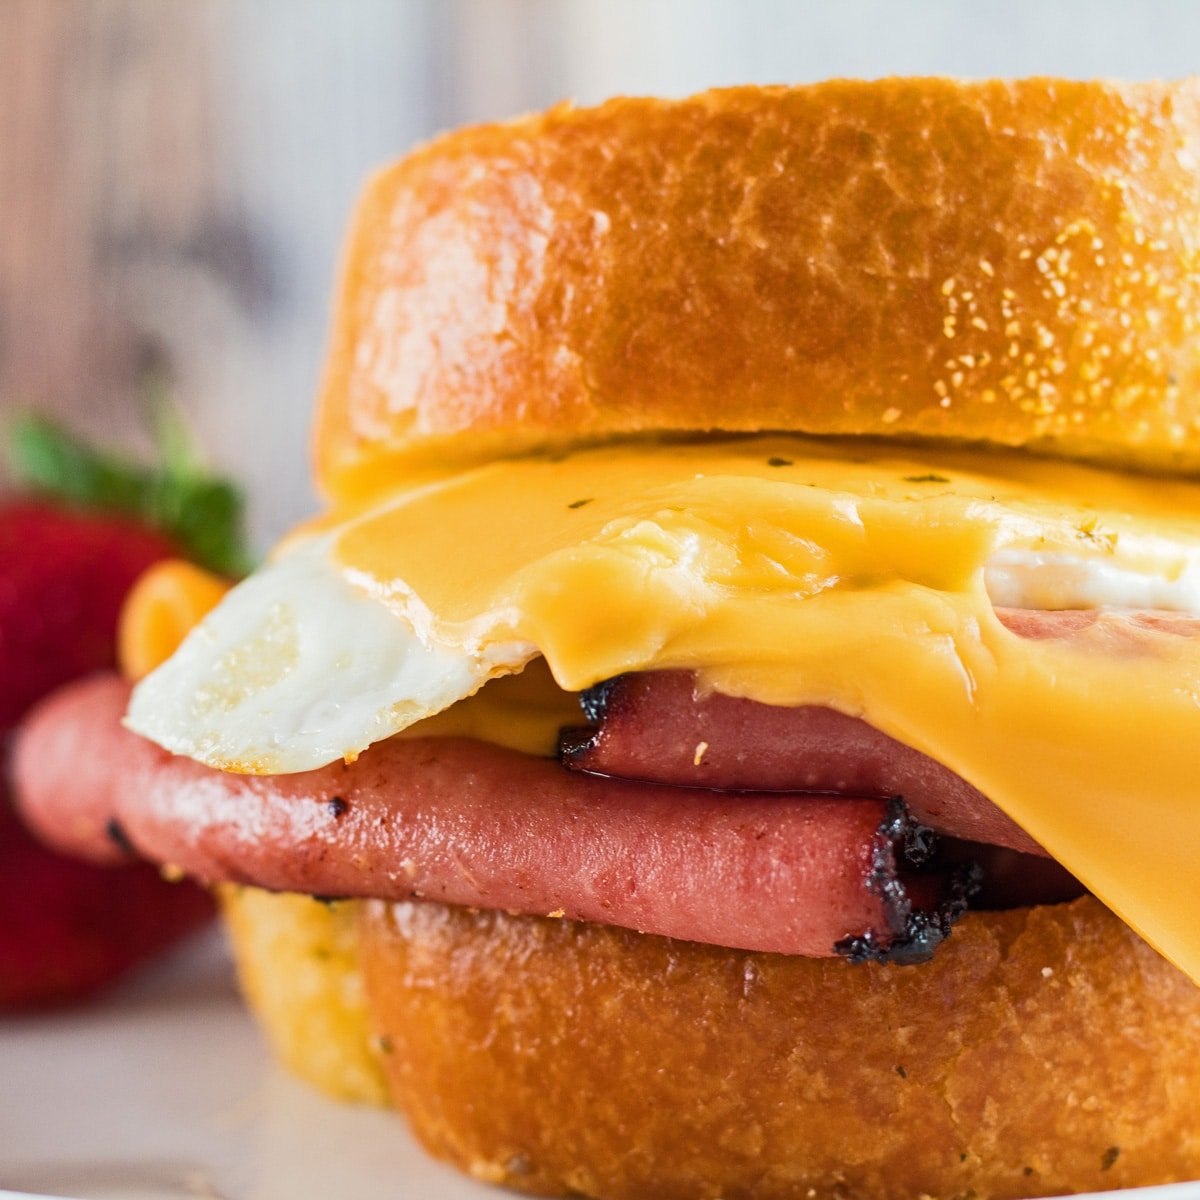 Закройте изображение жареного сэндвича с яичницей и болоньей.